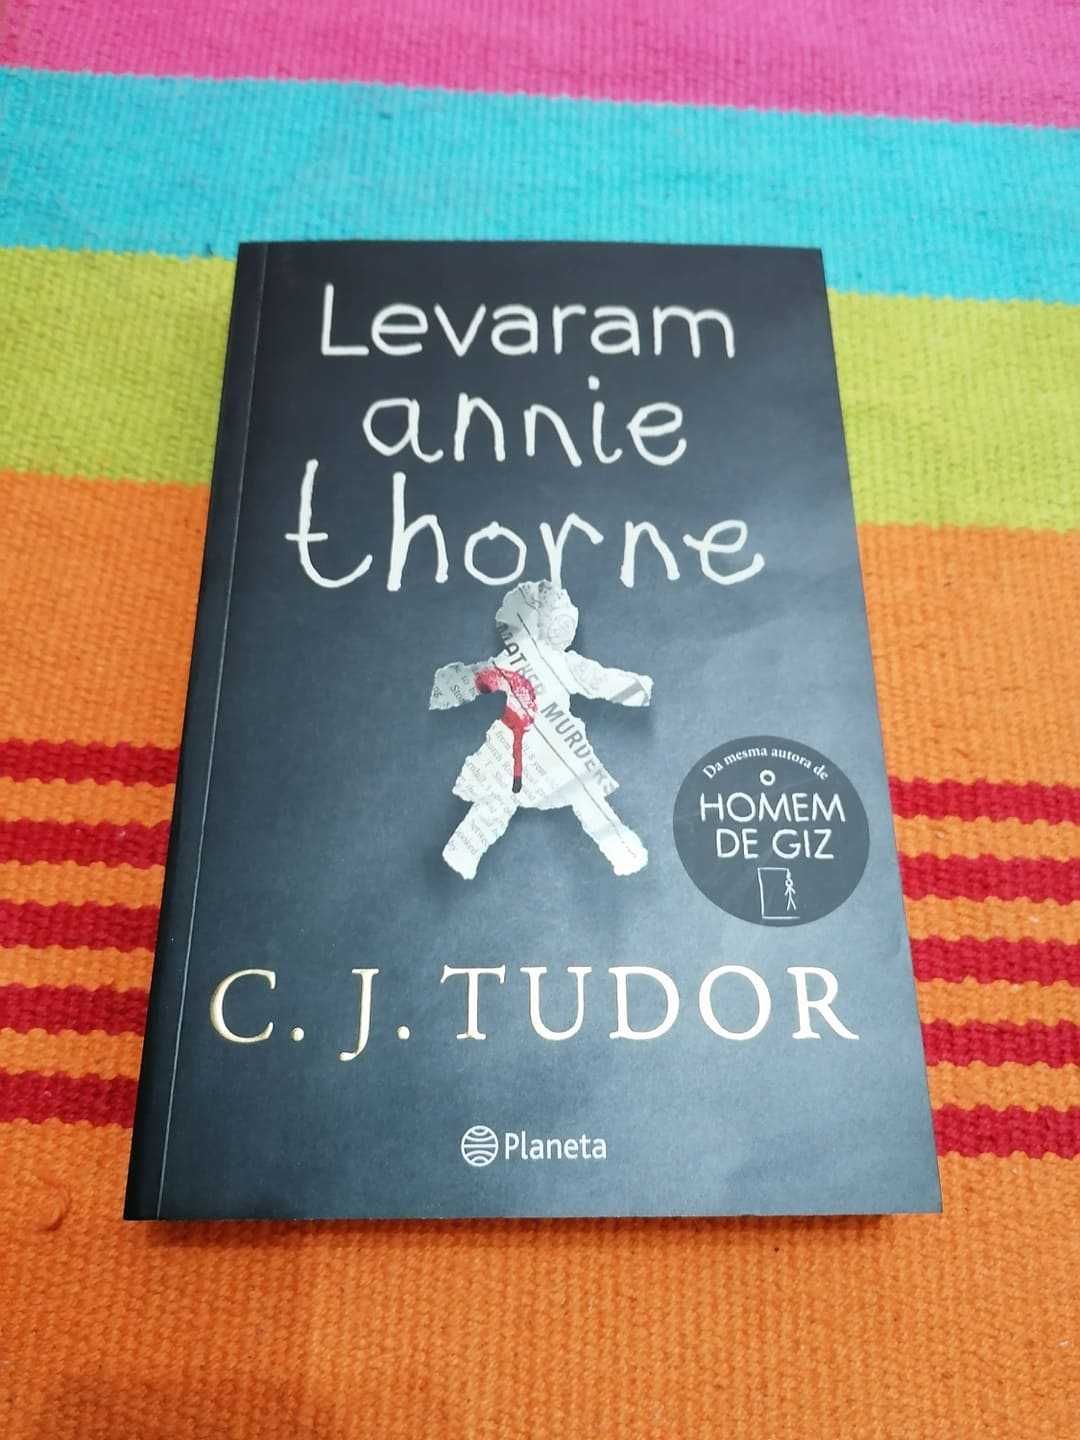 Levaram Annie Thorne, de C. J. Tudor